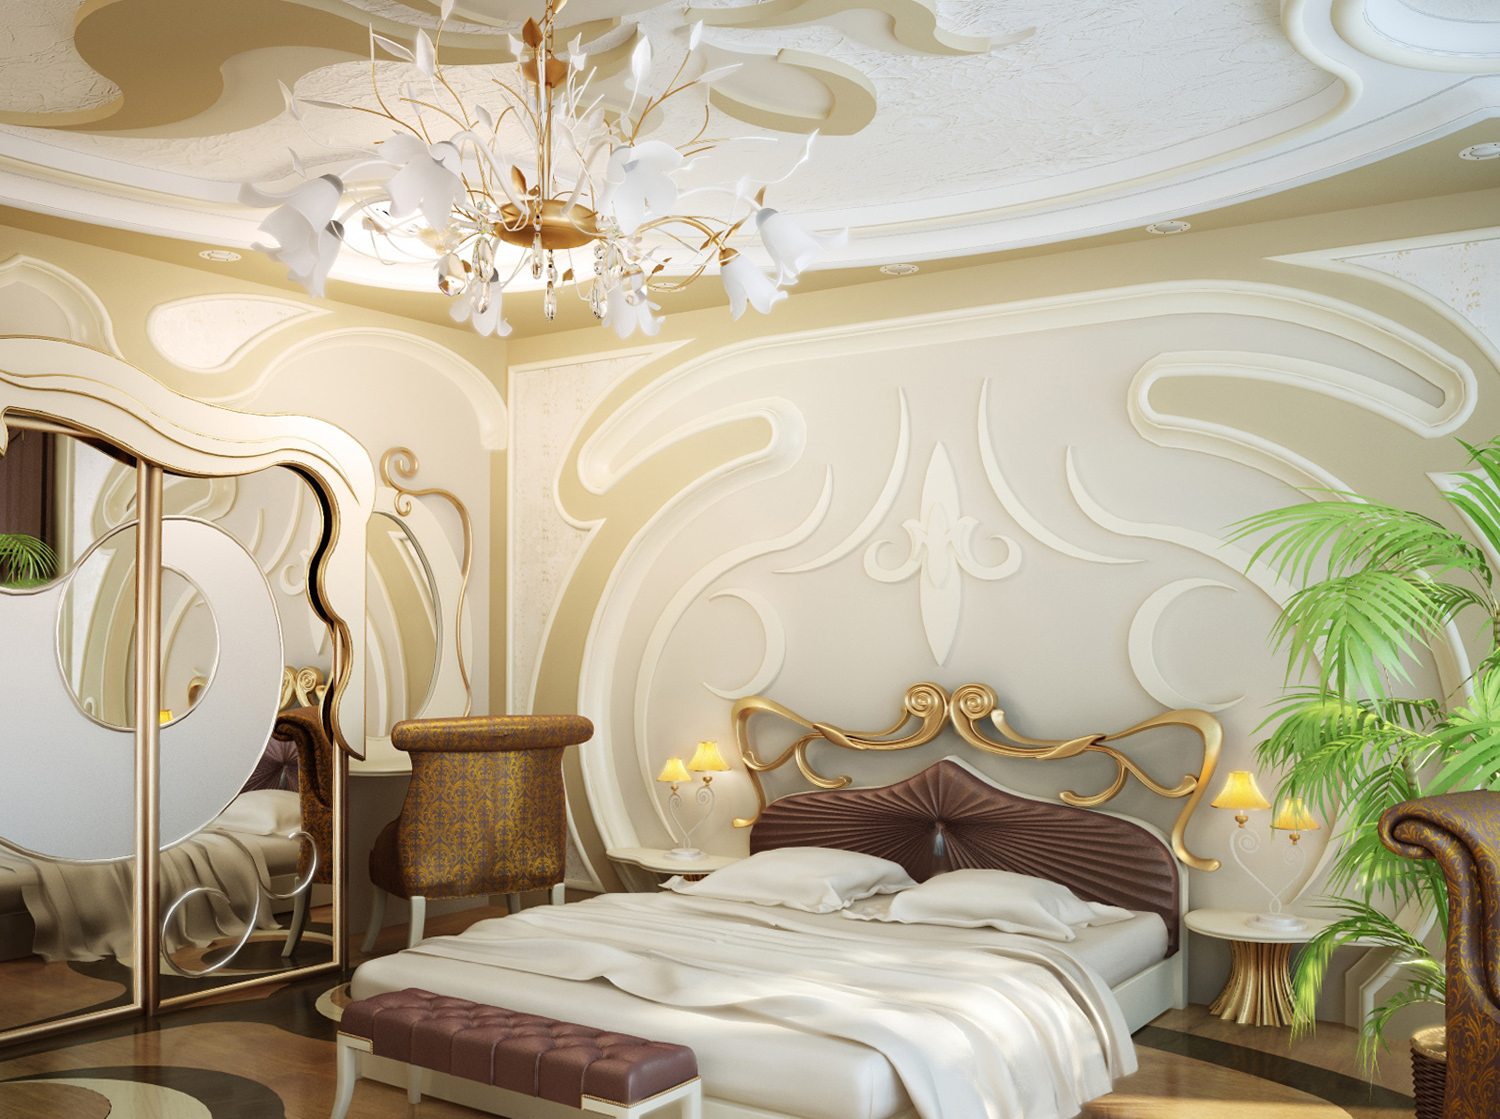 รูปภาพการตกแต่งห้องนอน Art Nouveau